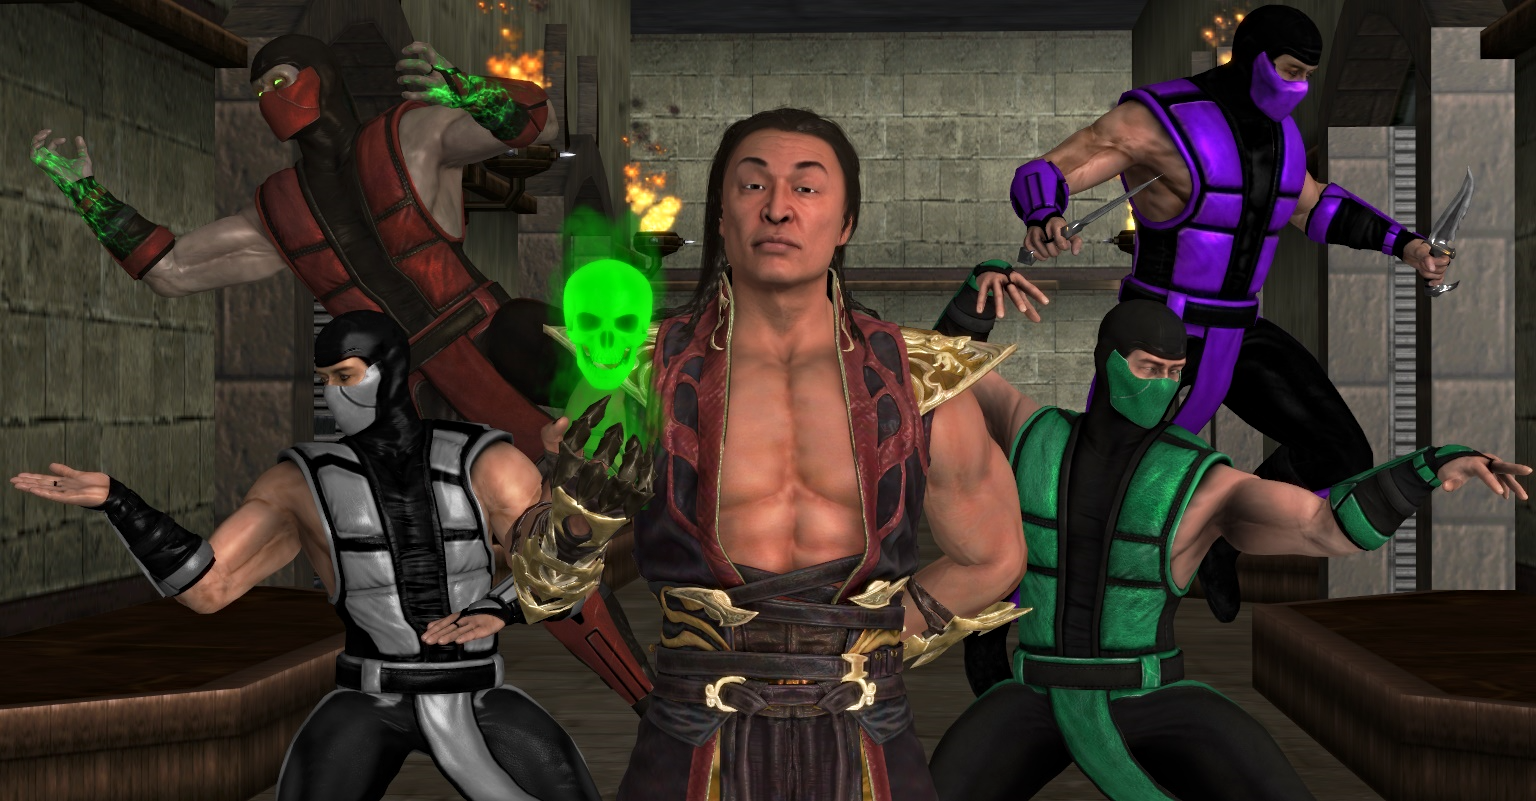 Shang Tsung - Mortal Kombat by LucasViniFranca on DeviantArt